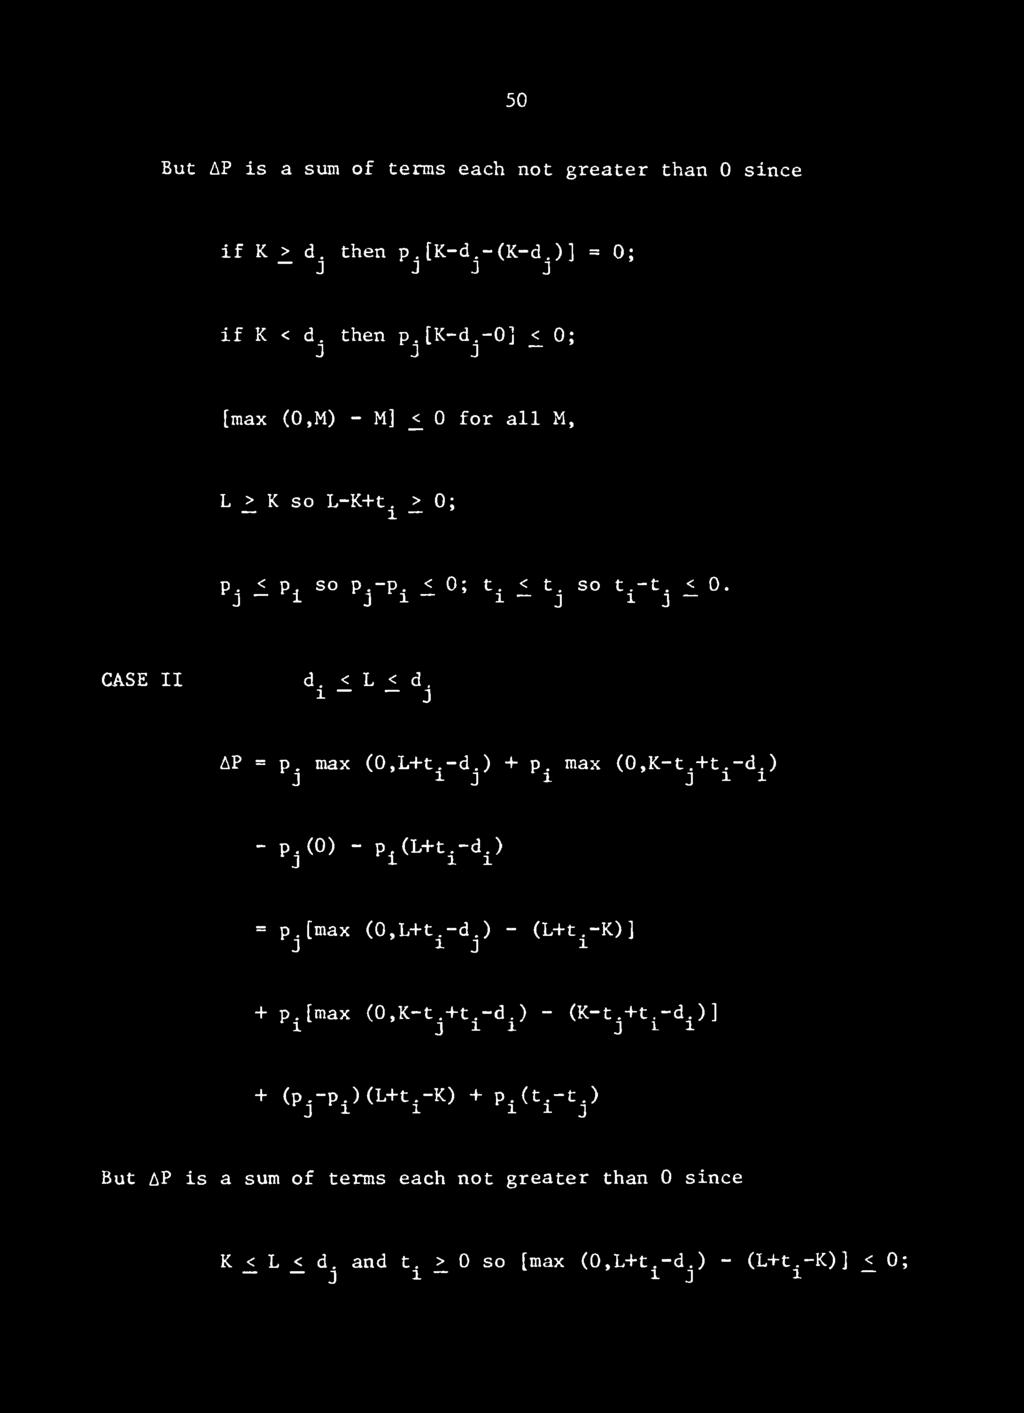 -K)] J 1 J 1. +p.[max (0,K-t.+t.-d.) - (K-t.+t ^1 ' ' J 1 1 J 1 1 ) + (p^-p.) (L+t.-K) + p. (t.